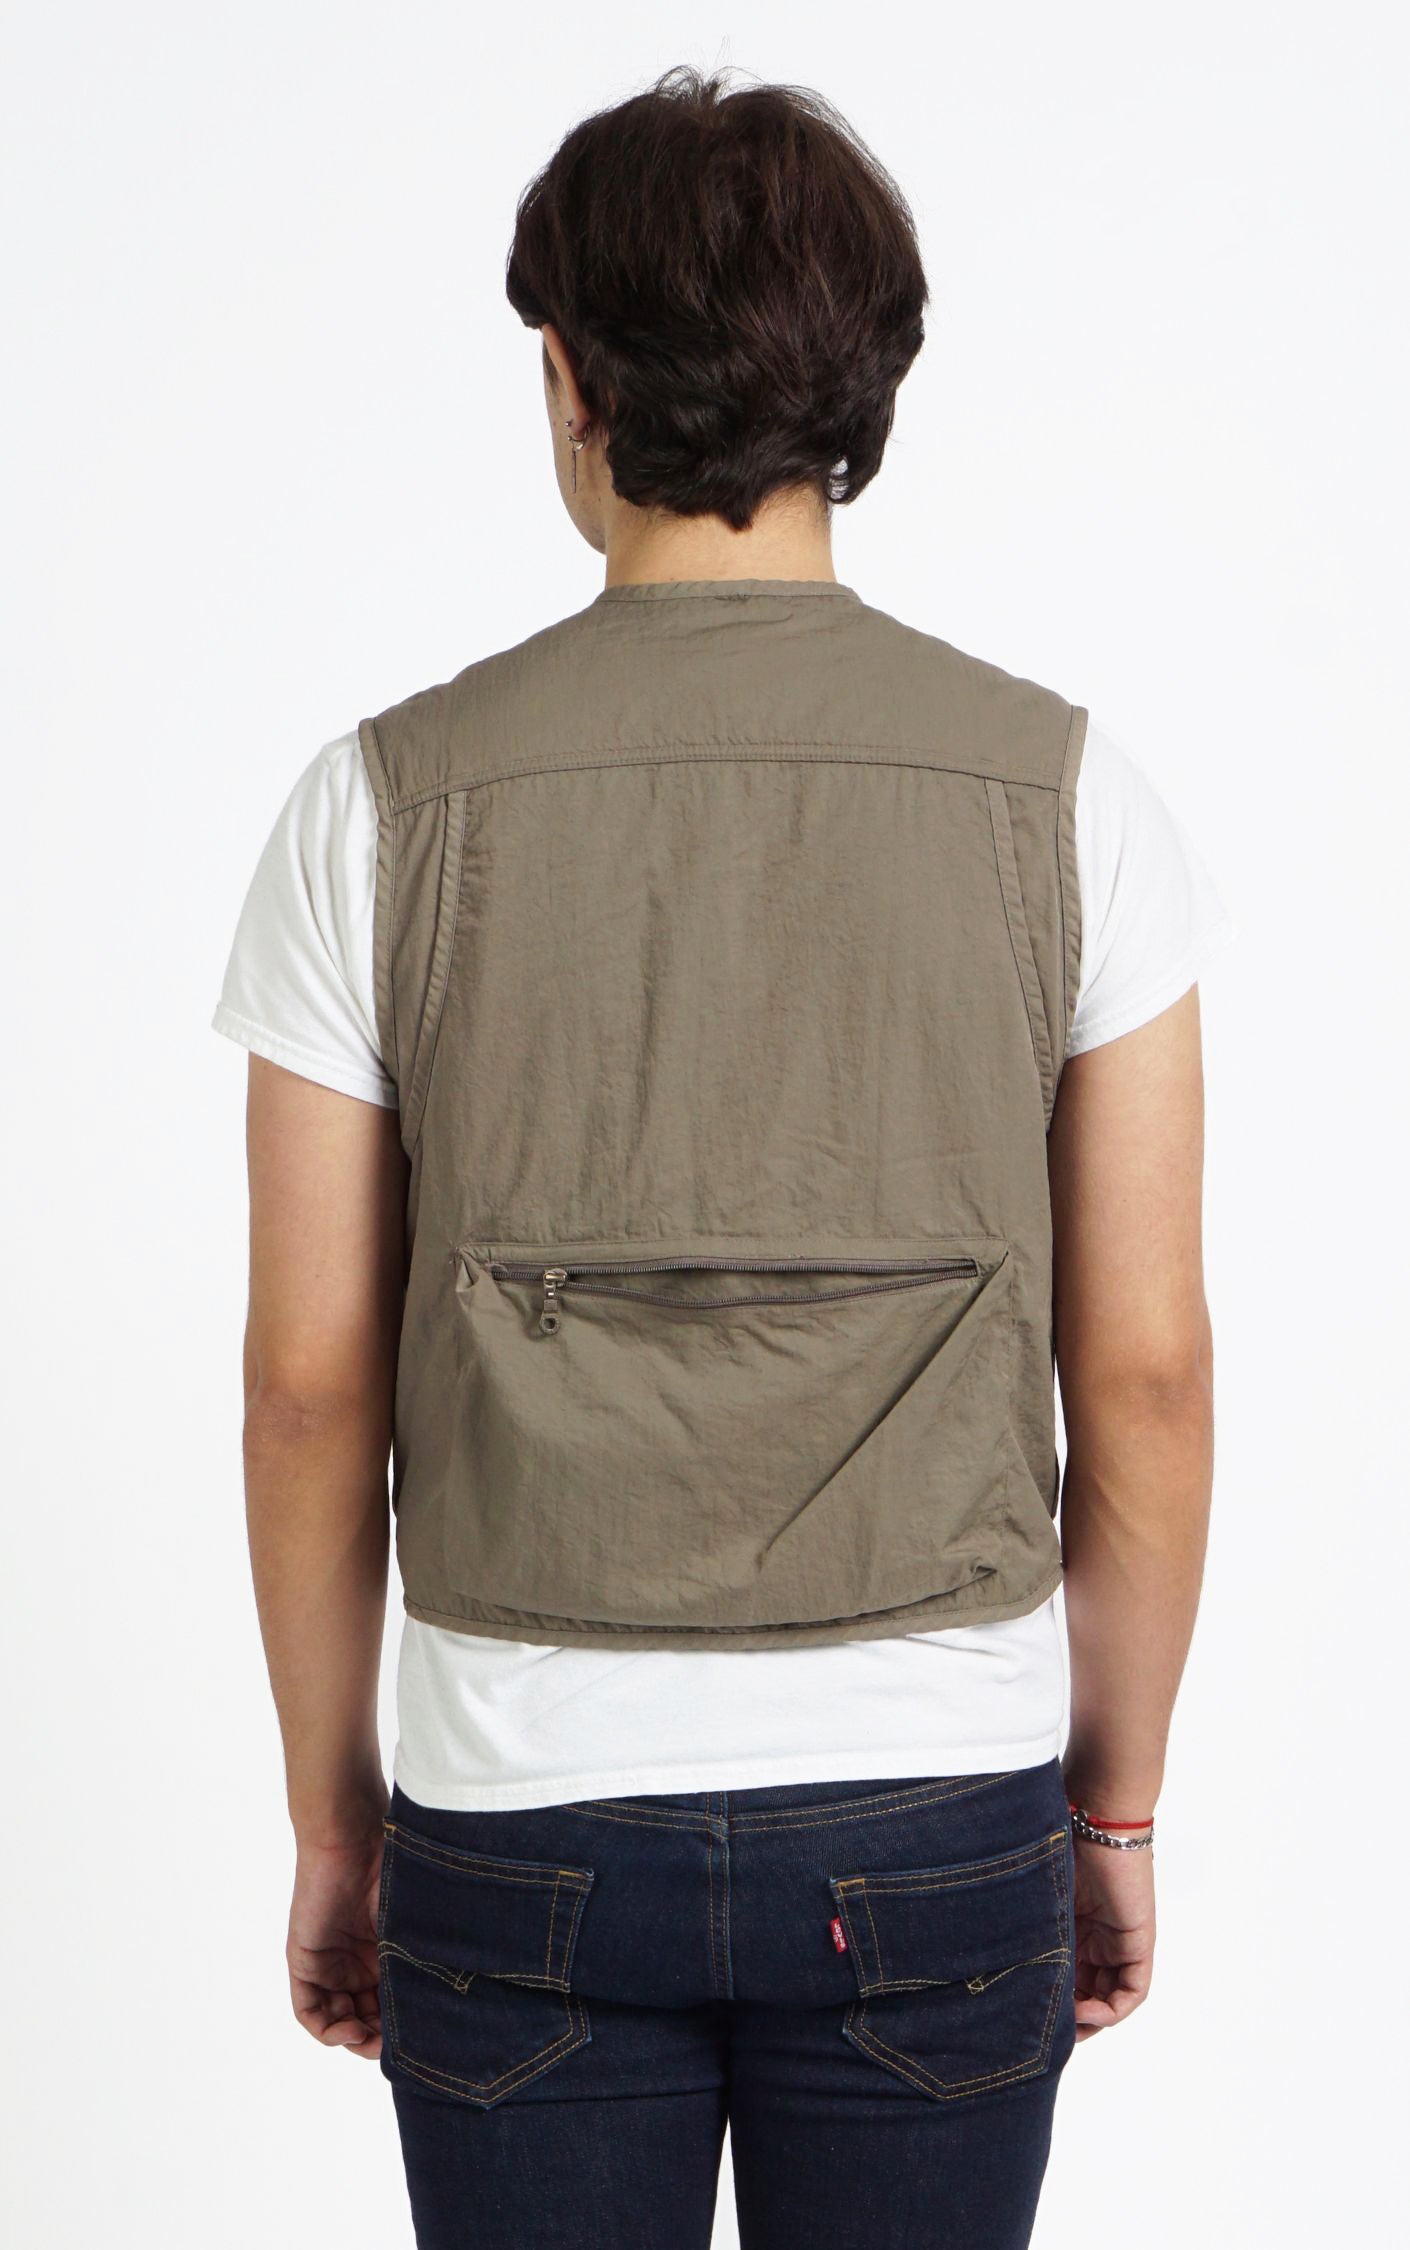 KOLON SPORT Khaki Cargo Zipped Pockets Outdoors Vest resellum